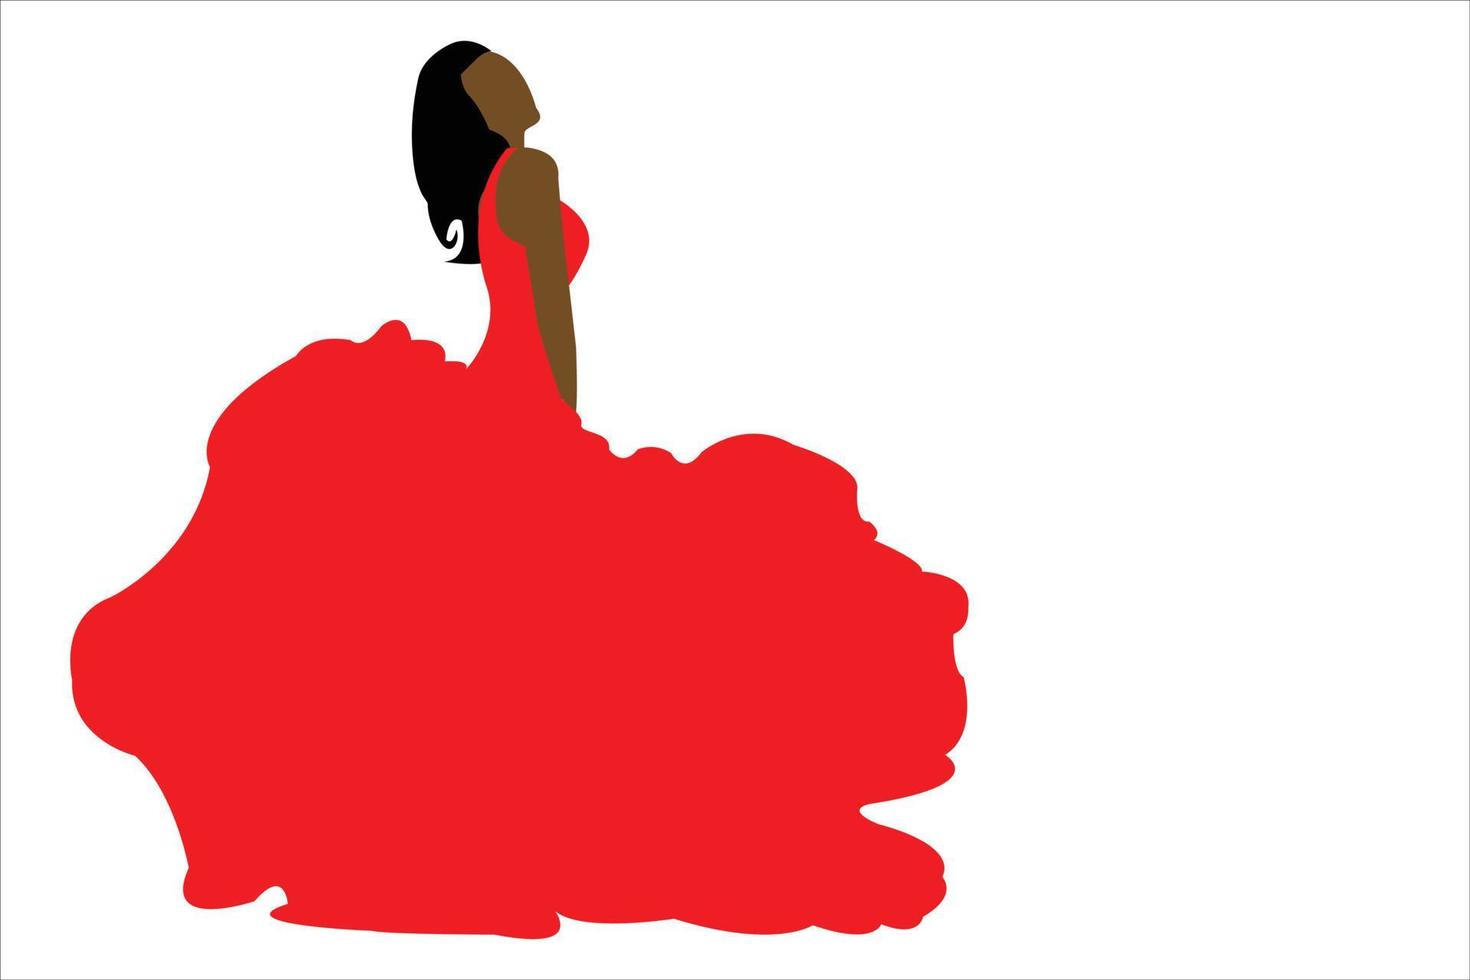 mode femme robe rouge isolé sur fond blanc. vecteur